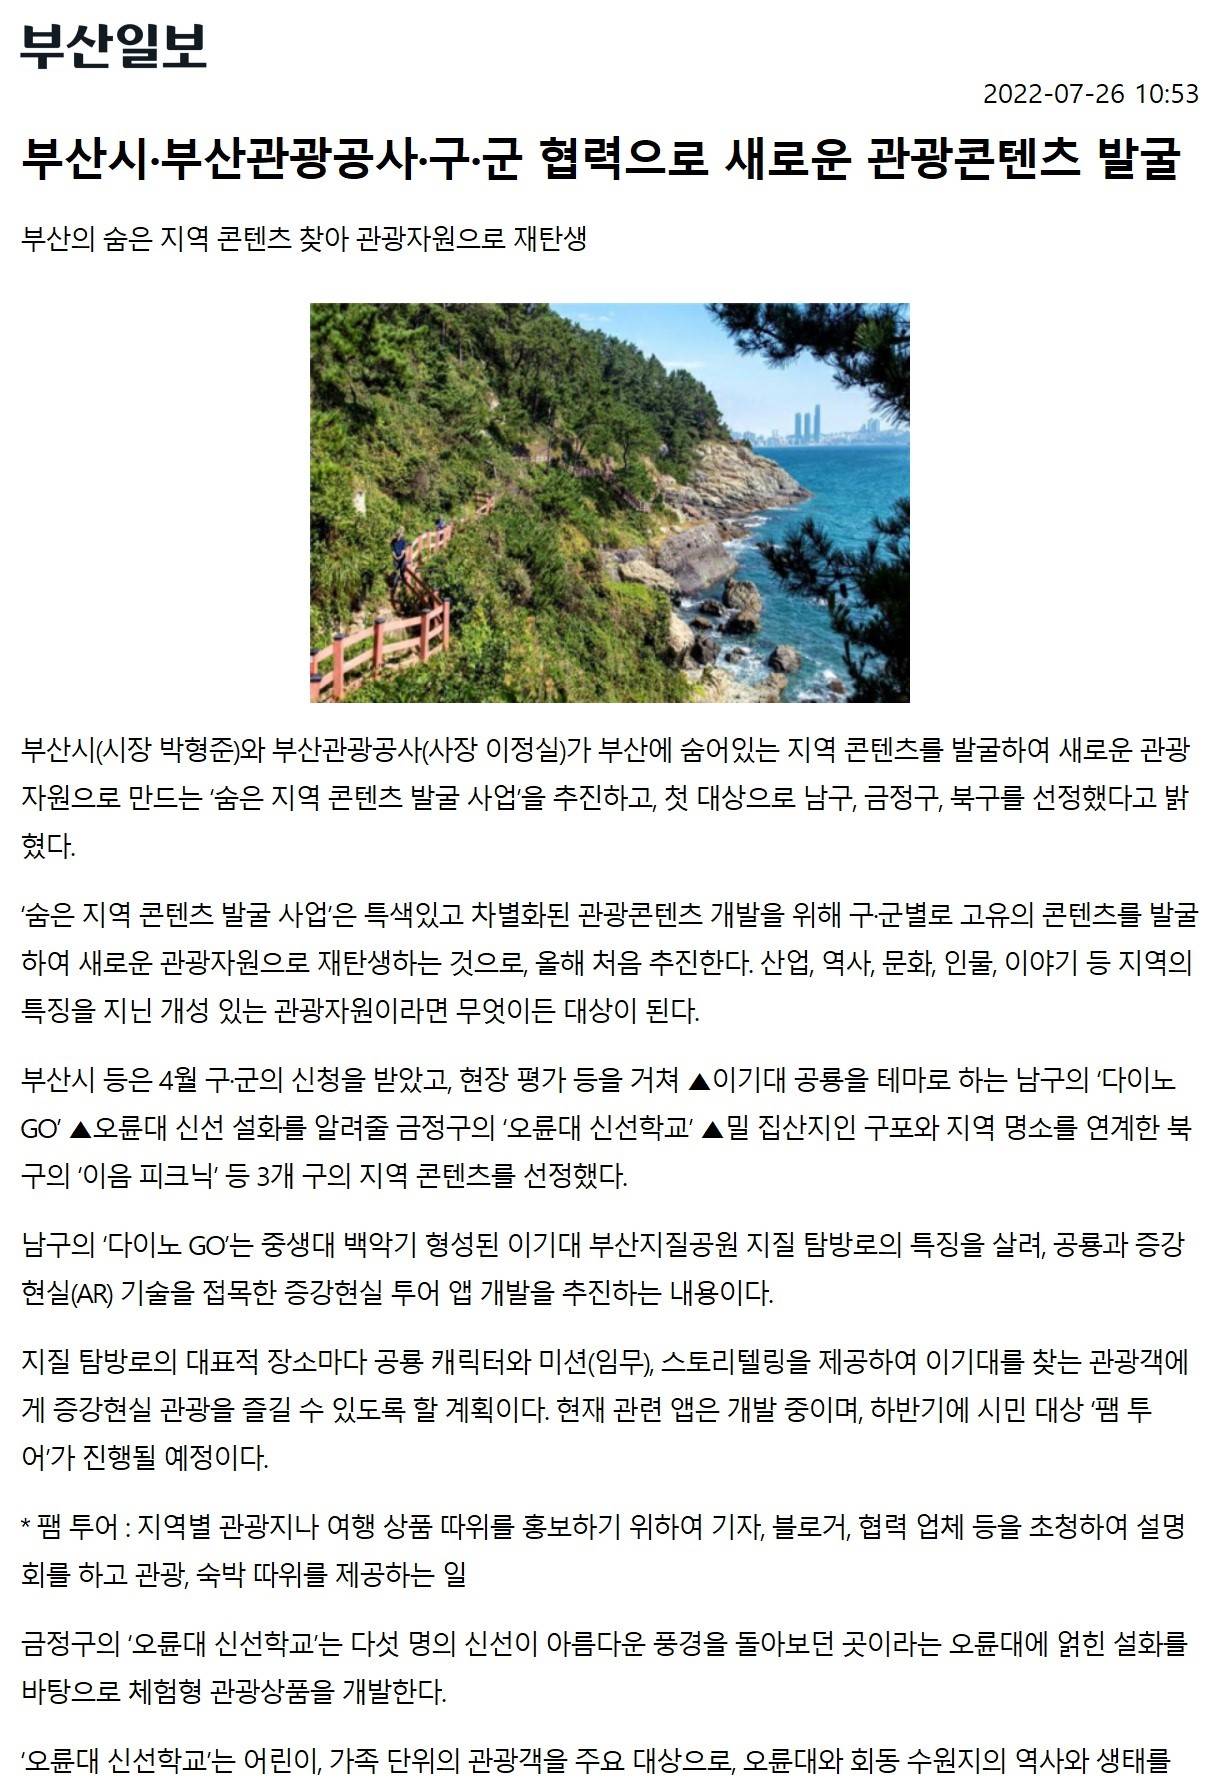 [2022.7.]부산시·부산관광공사·구군 협력으로 새로운 관광콘텐츠 발굴 이미지